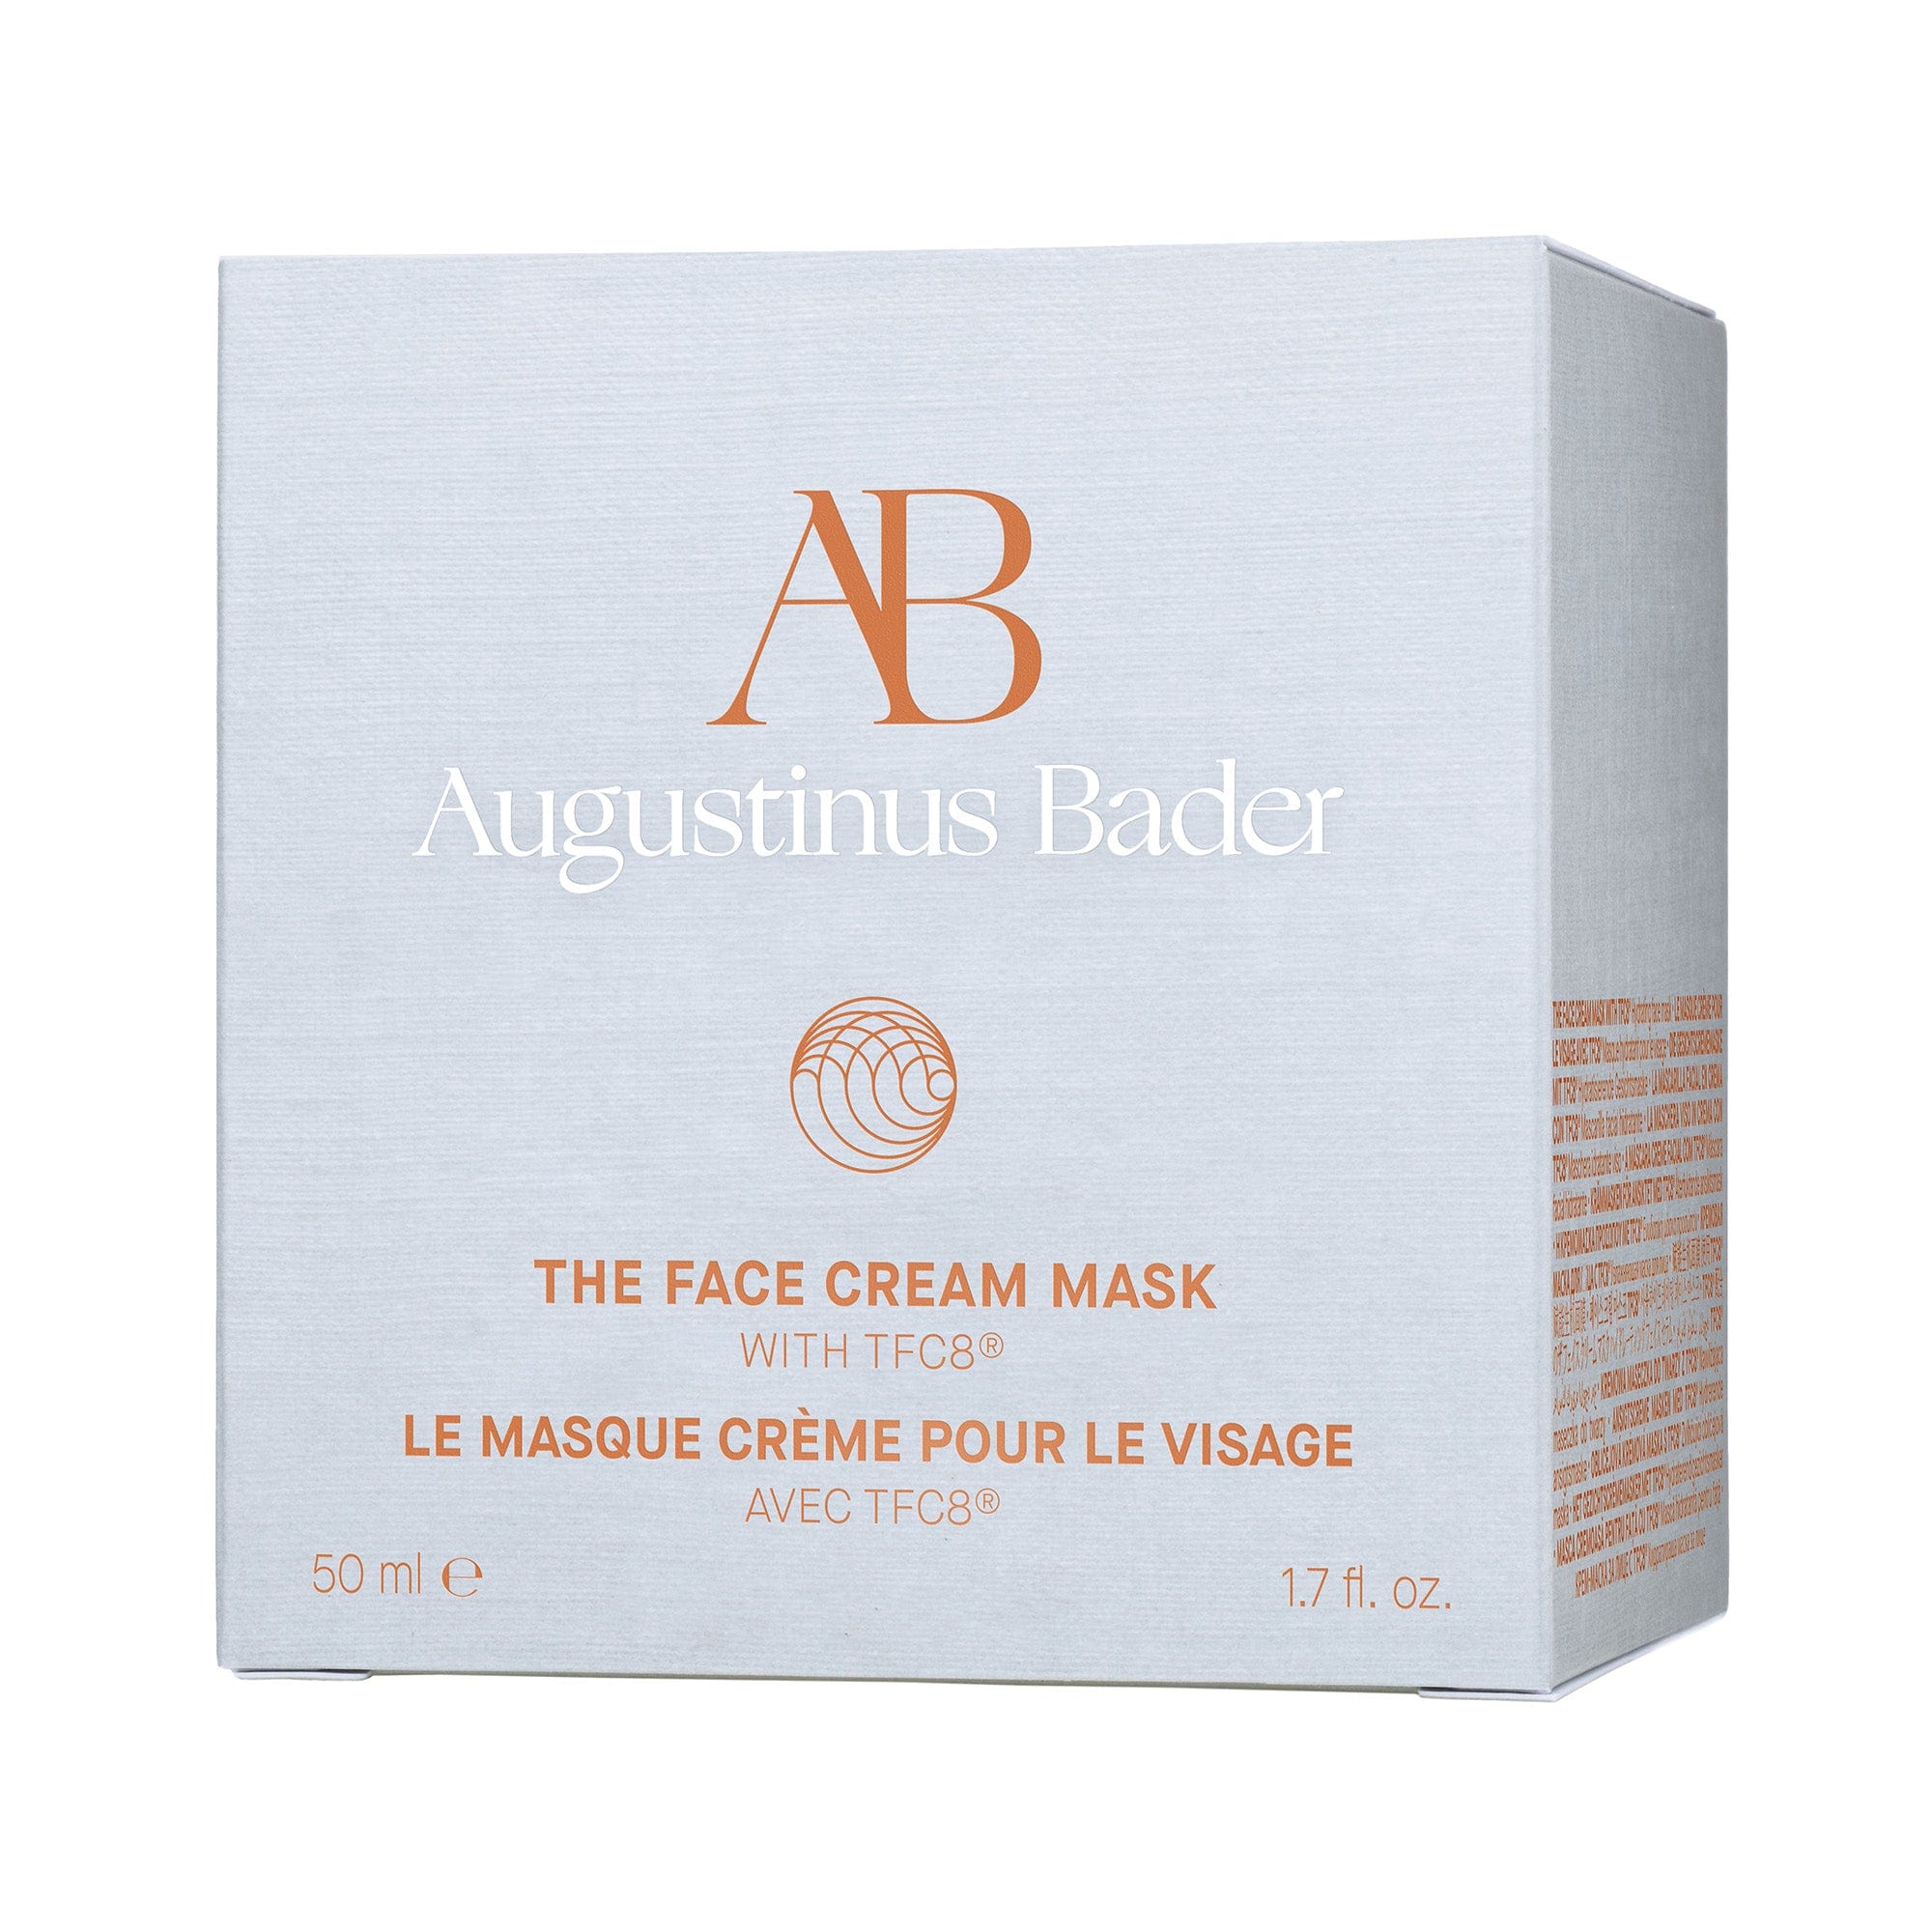 The Face Cream Mask Augustinus Bader Moisturizing Mask